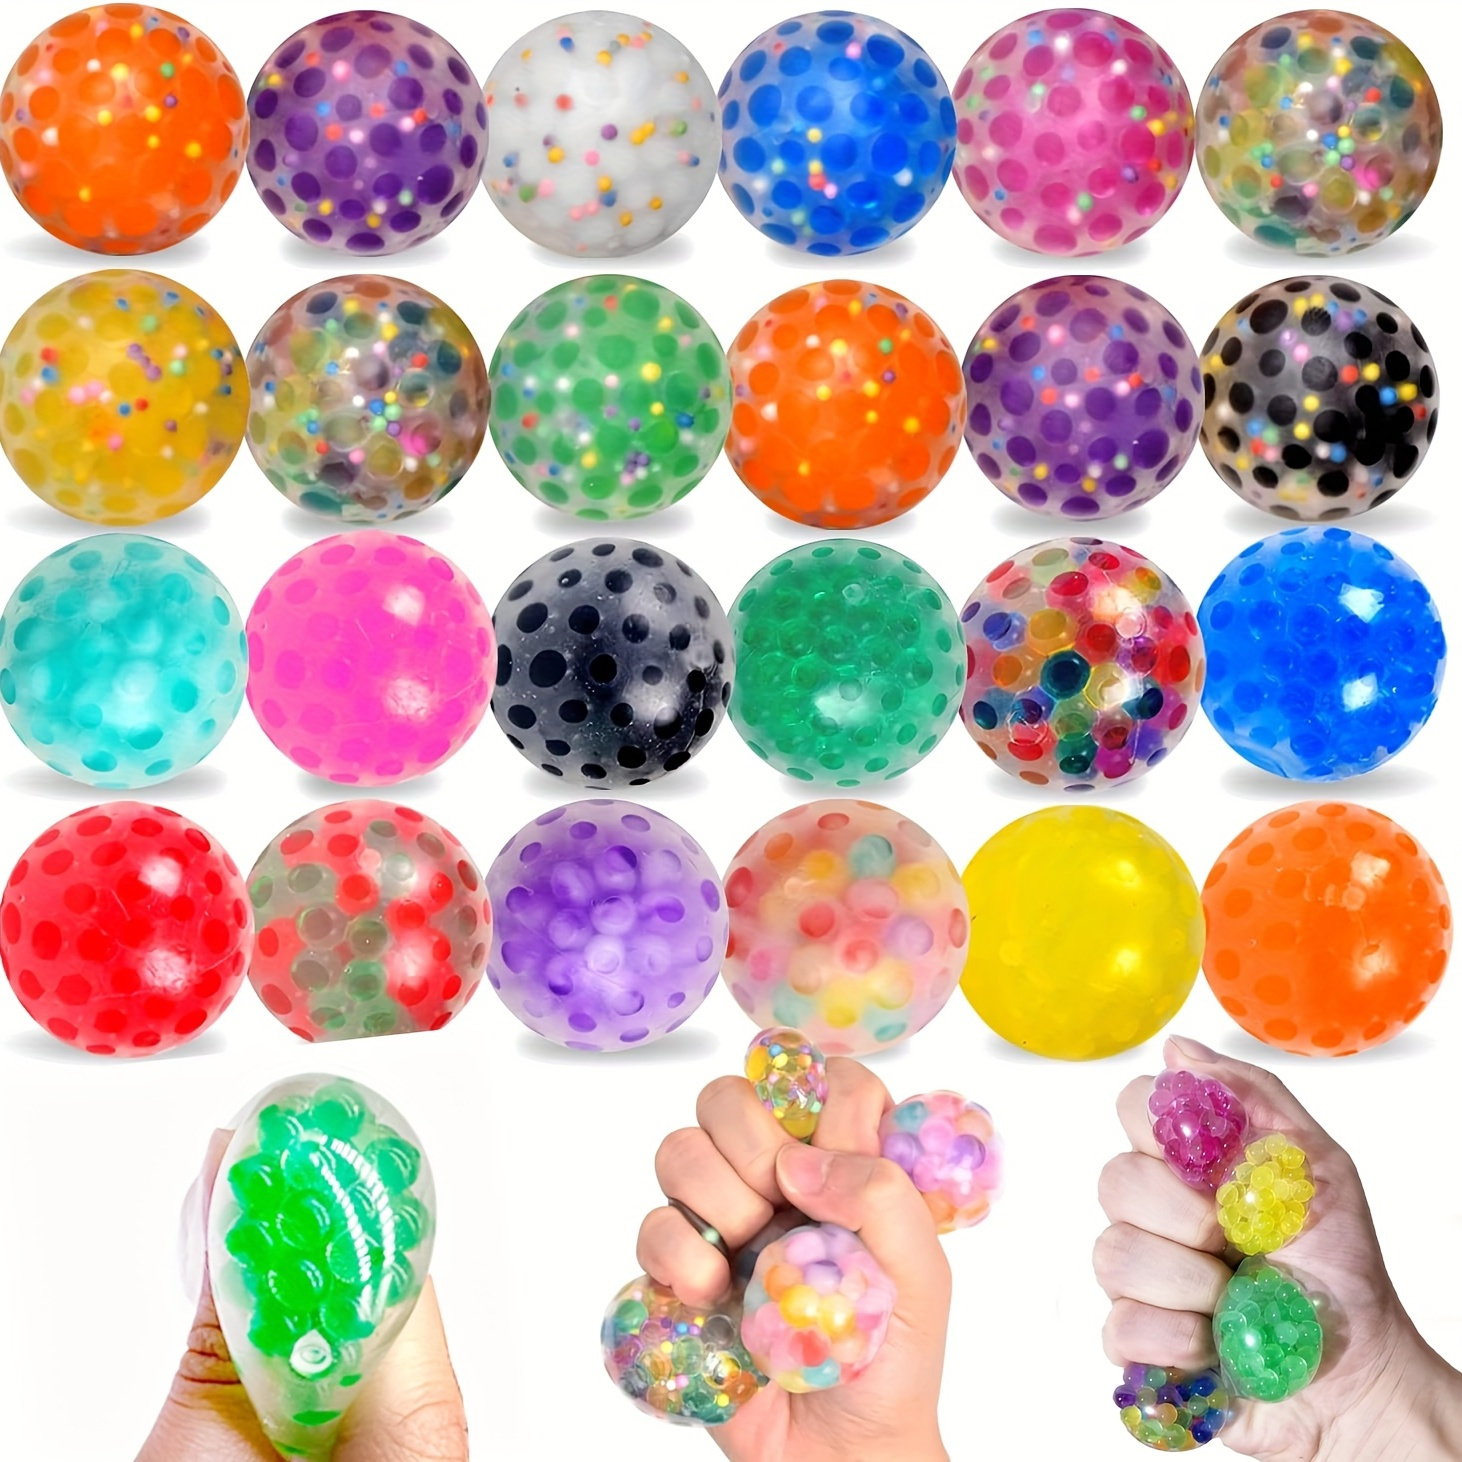 Balle Anti-Stress Fidget Toys - Lot de 8 Balles Anti-Stress